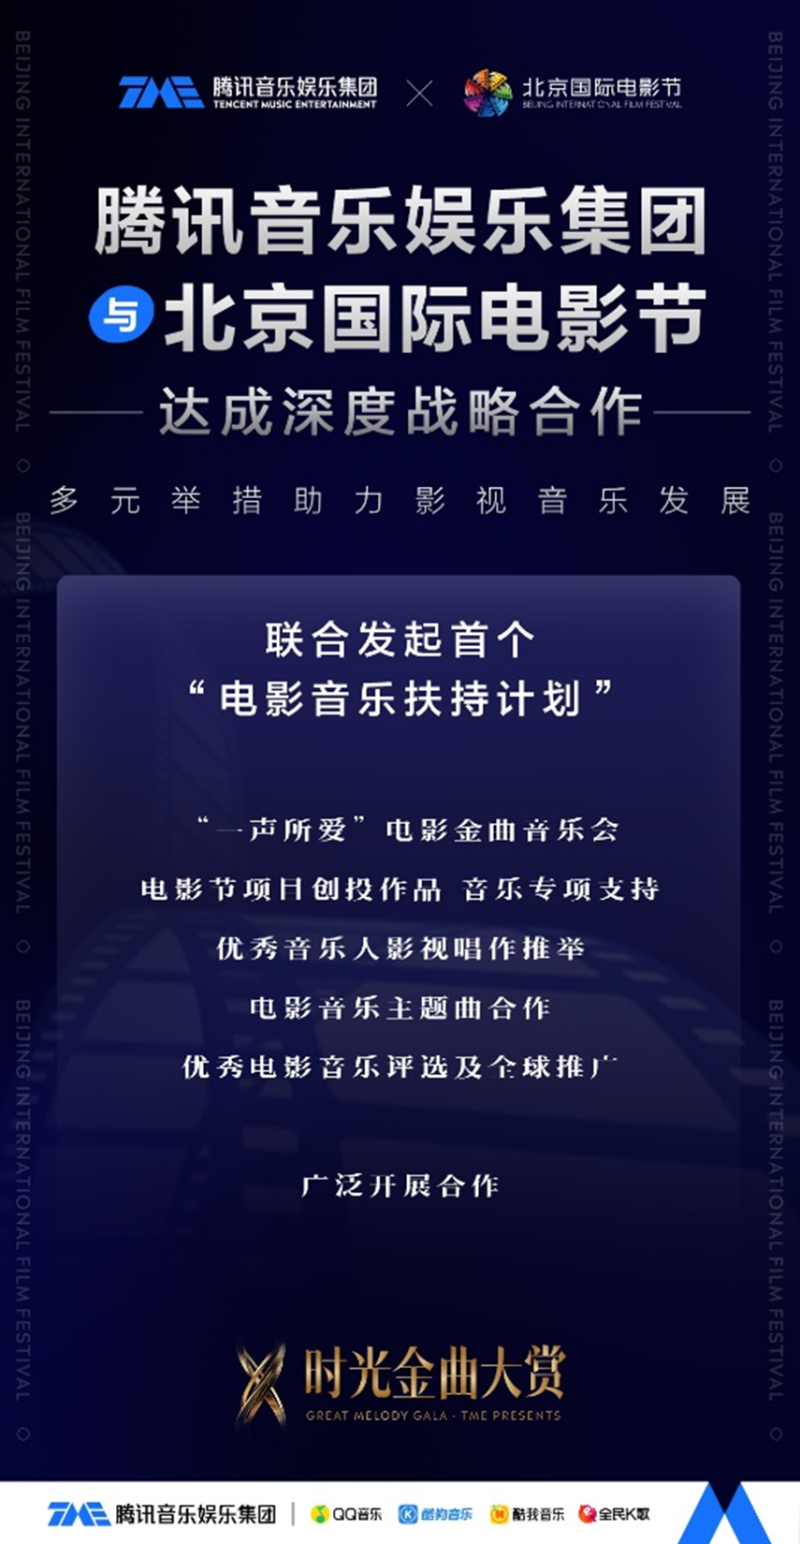 腾讯音乐成为北京国际电影节唯一音乐合作伙伴推出首个国际化专项“电影音乐扶持计划”